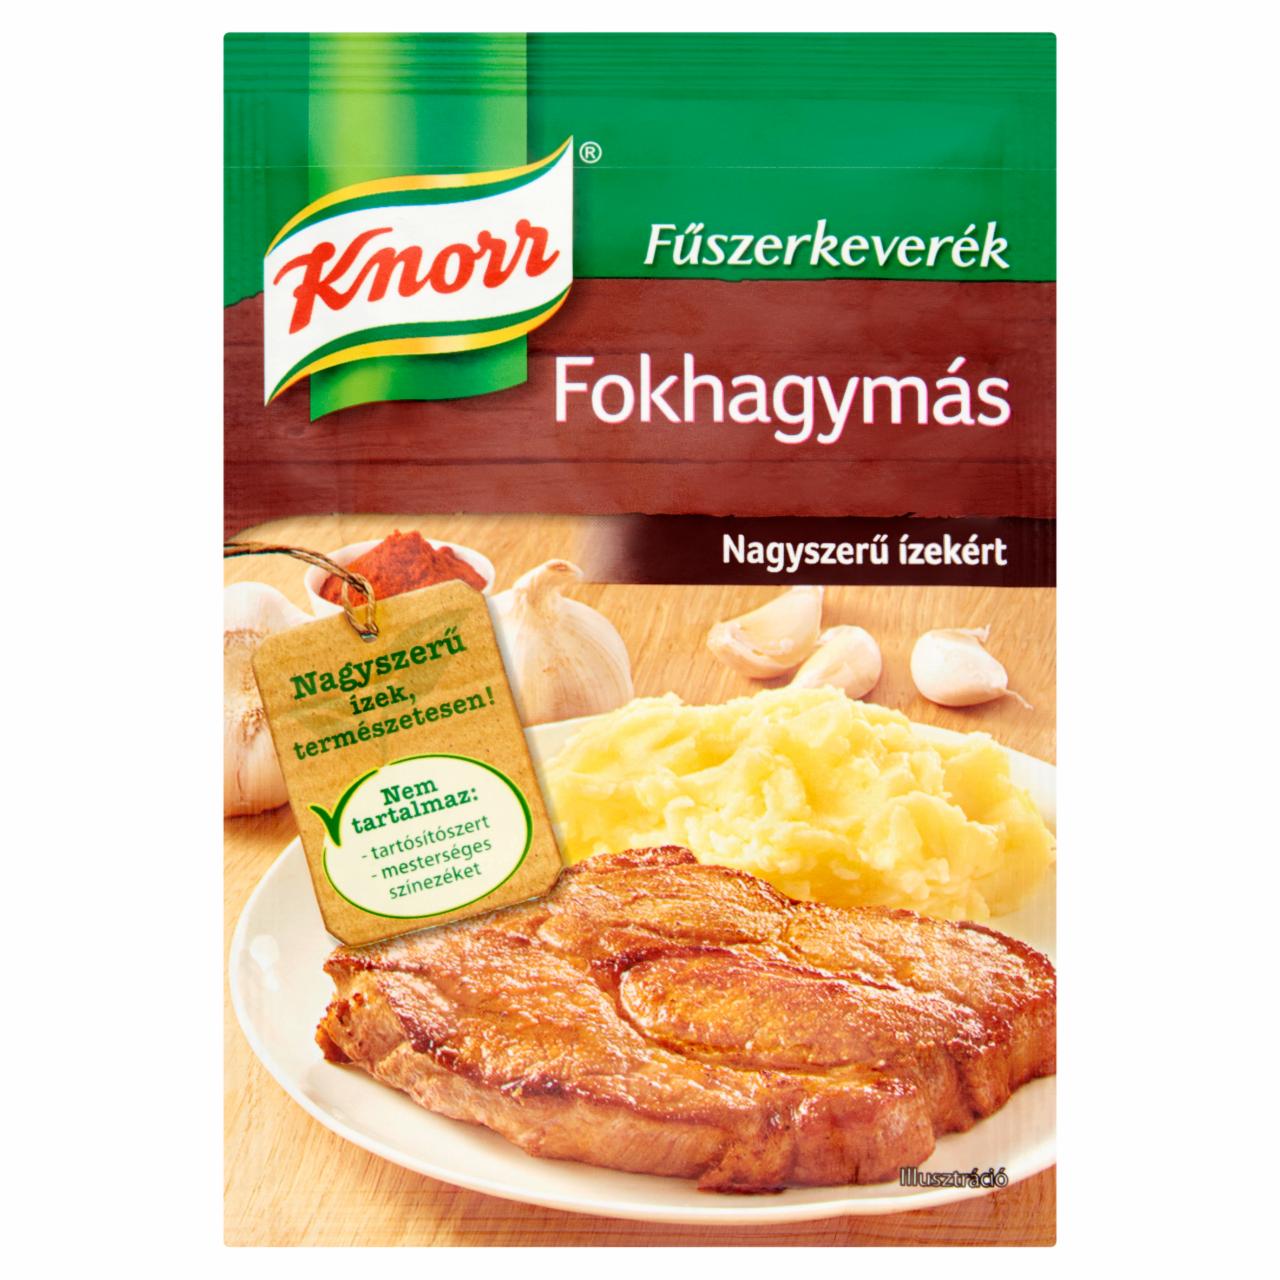 Képek - Knorr fokhagymás fűszerkeverék 35 g